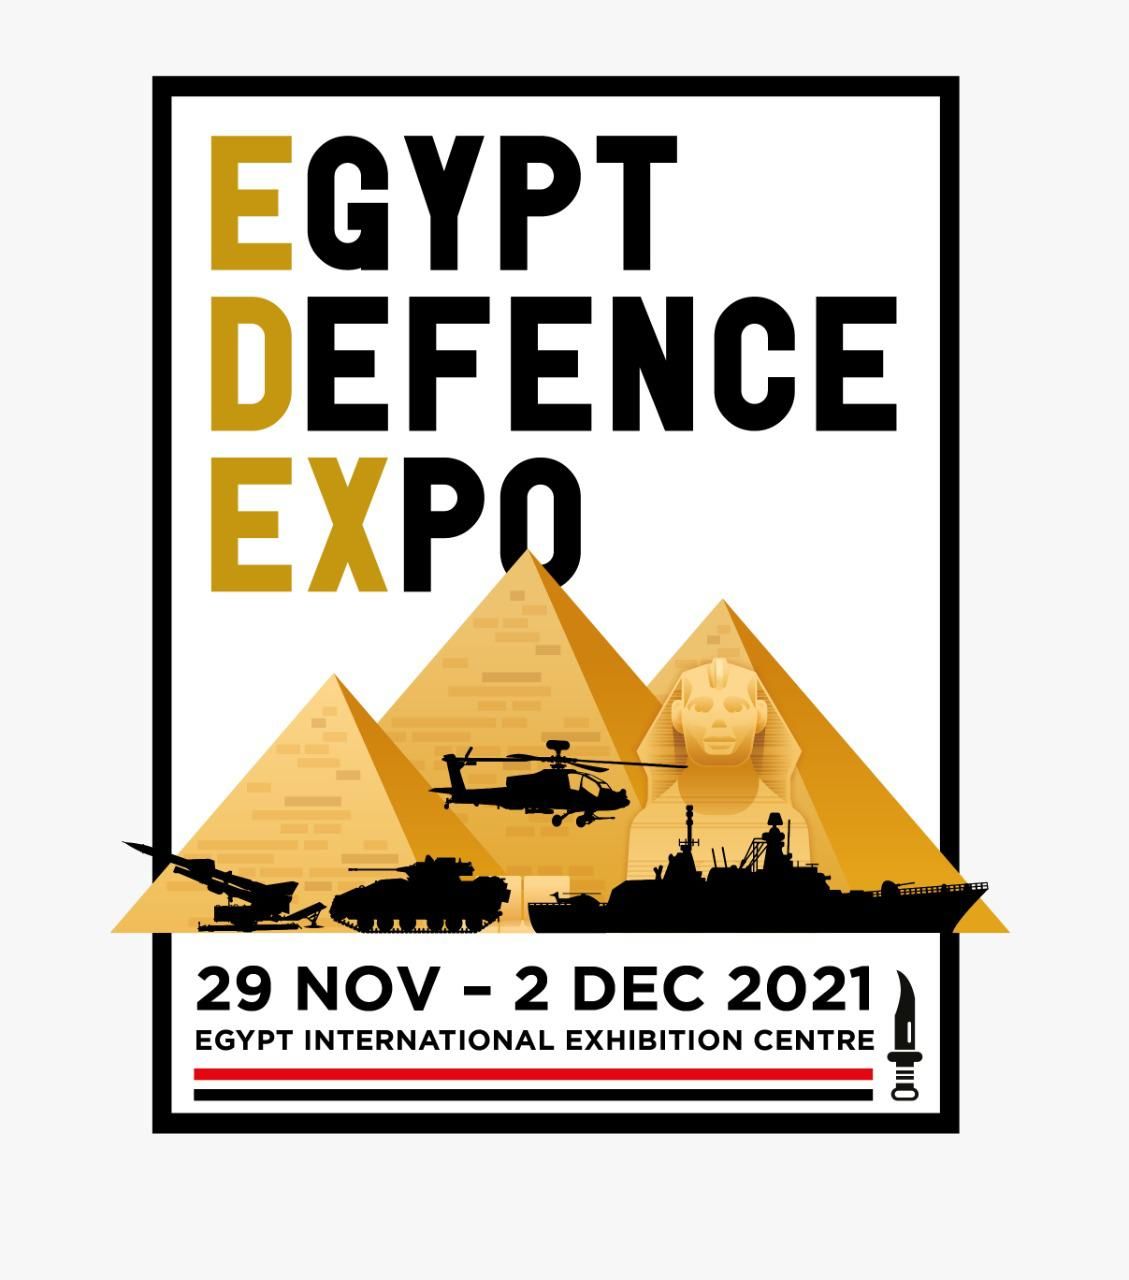 مصر تنظم المعرض الدولى للصناعات الدفاعية والعسكرية إيديكس 2021